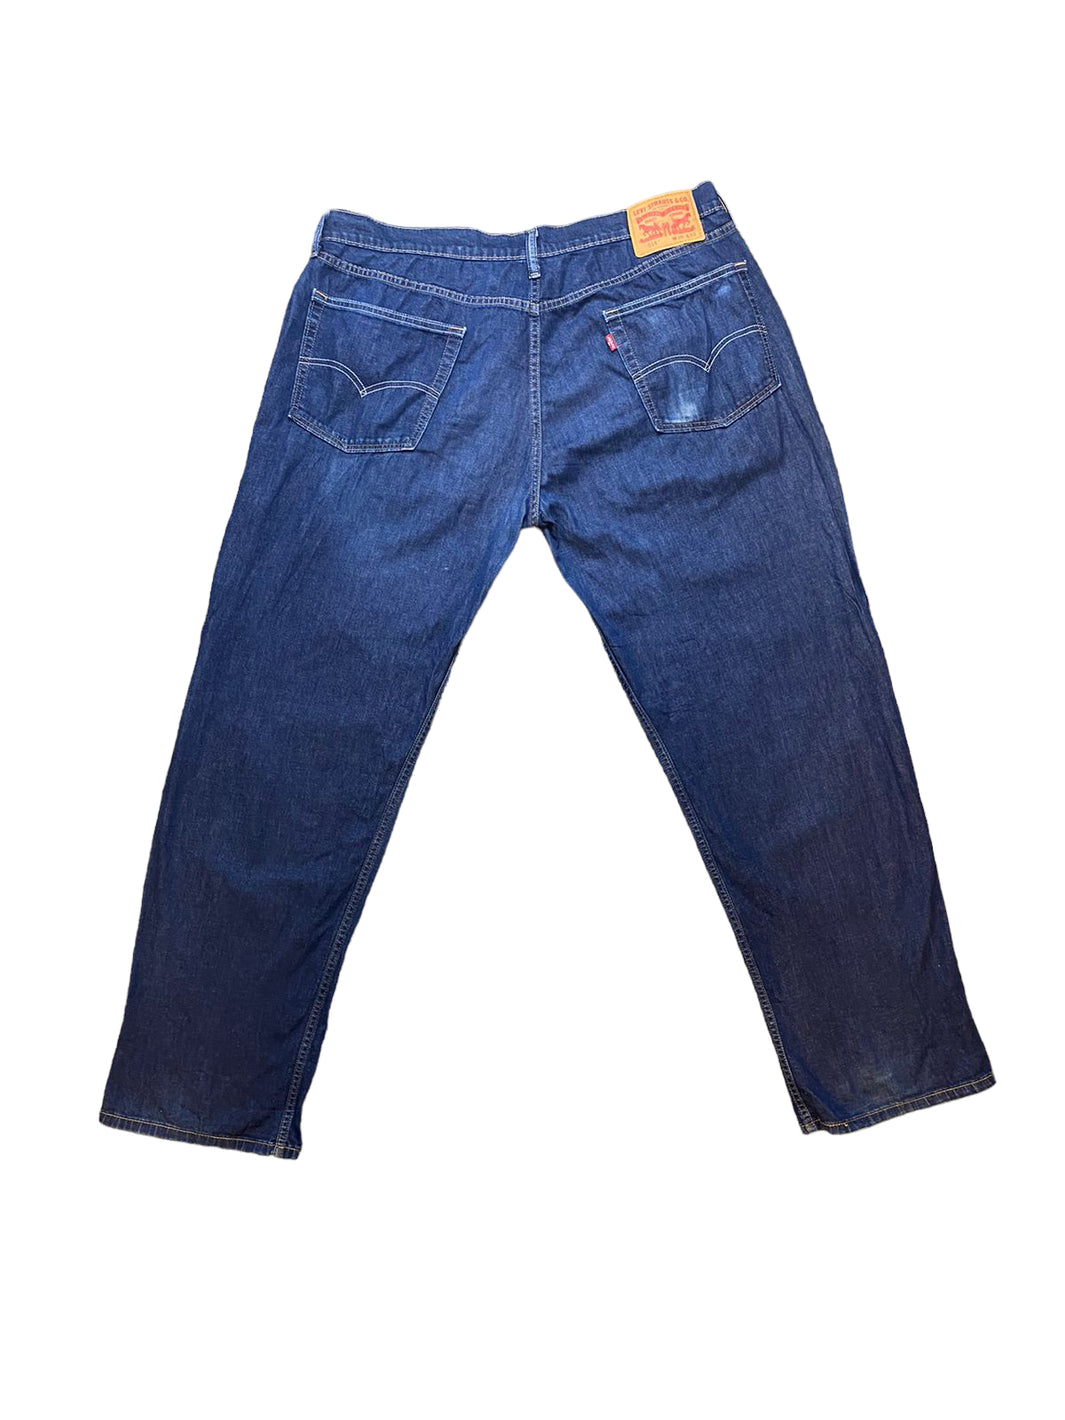 Levi’s 514 Jeans